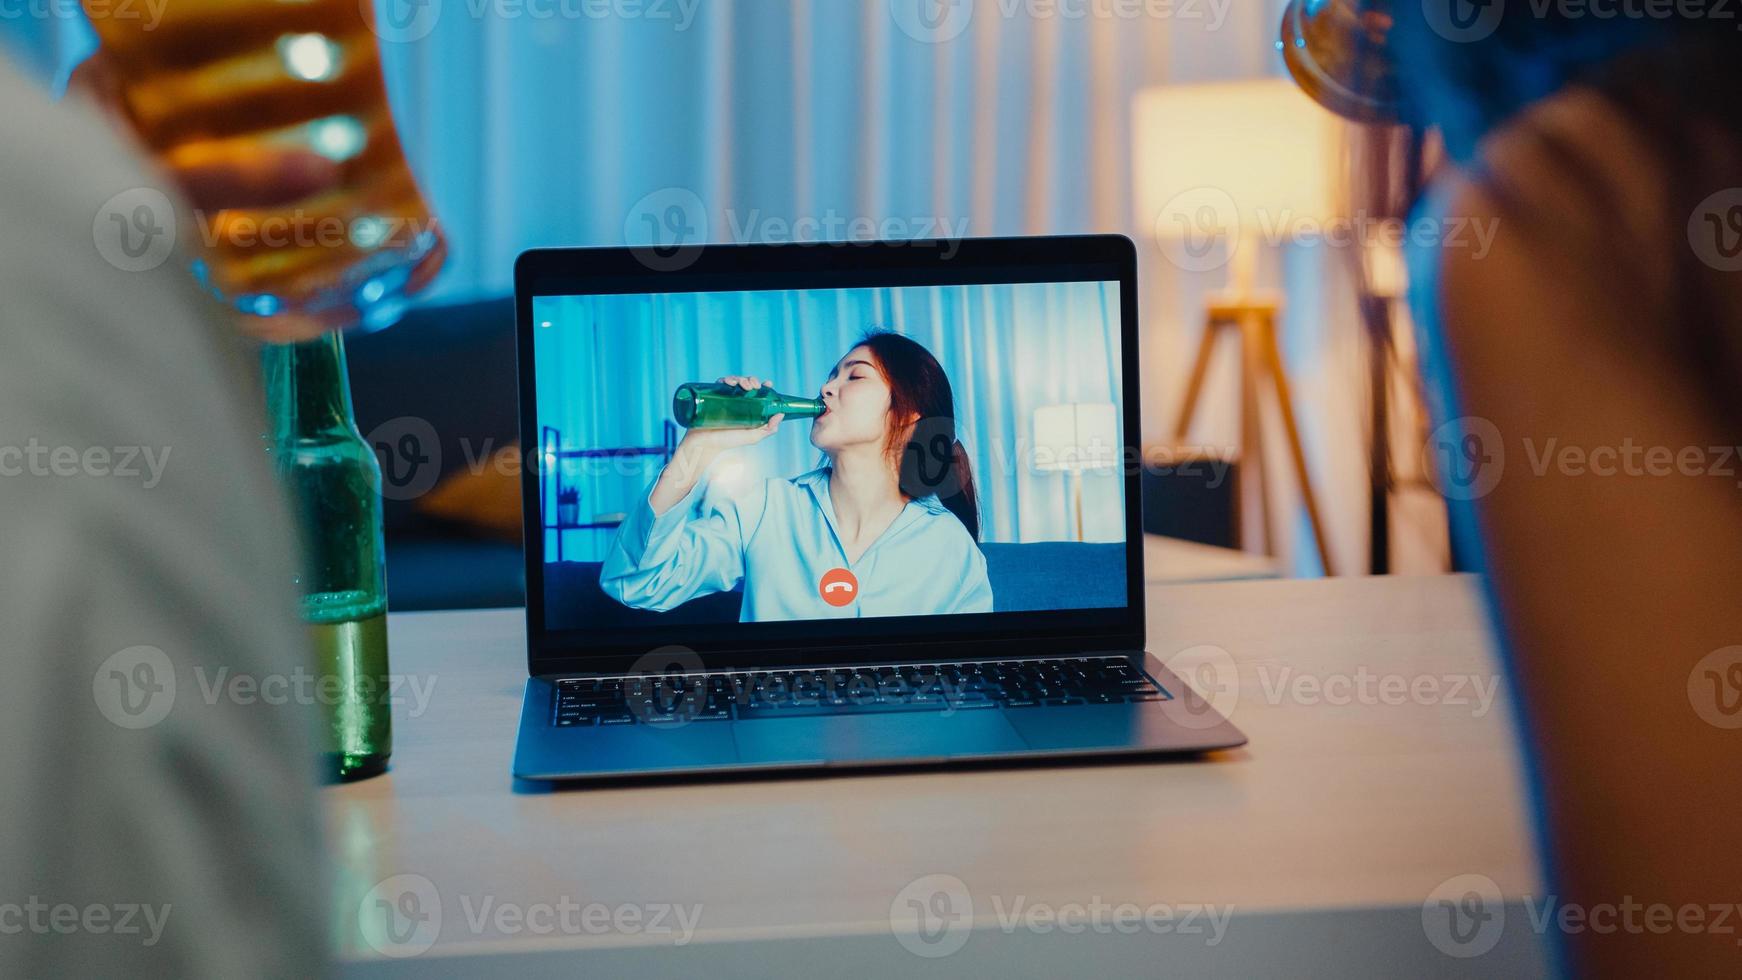 giovane donna asiatica che beve birra divertirsi momento felice festa notturna evento celebrazione online tramite videochiamata nel soggiorno di casa di notte. distanziamento sociale, quarantena per la prevenzione del coronavirus. foto